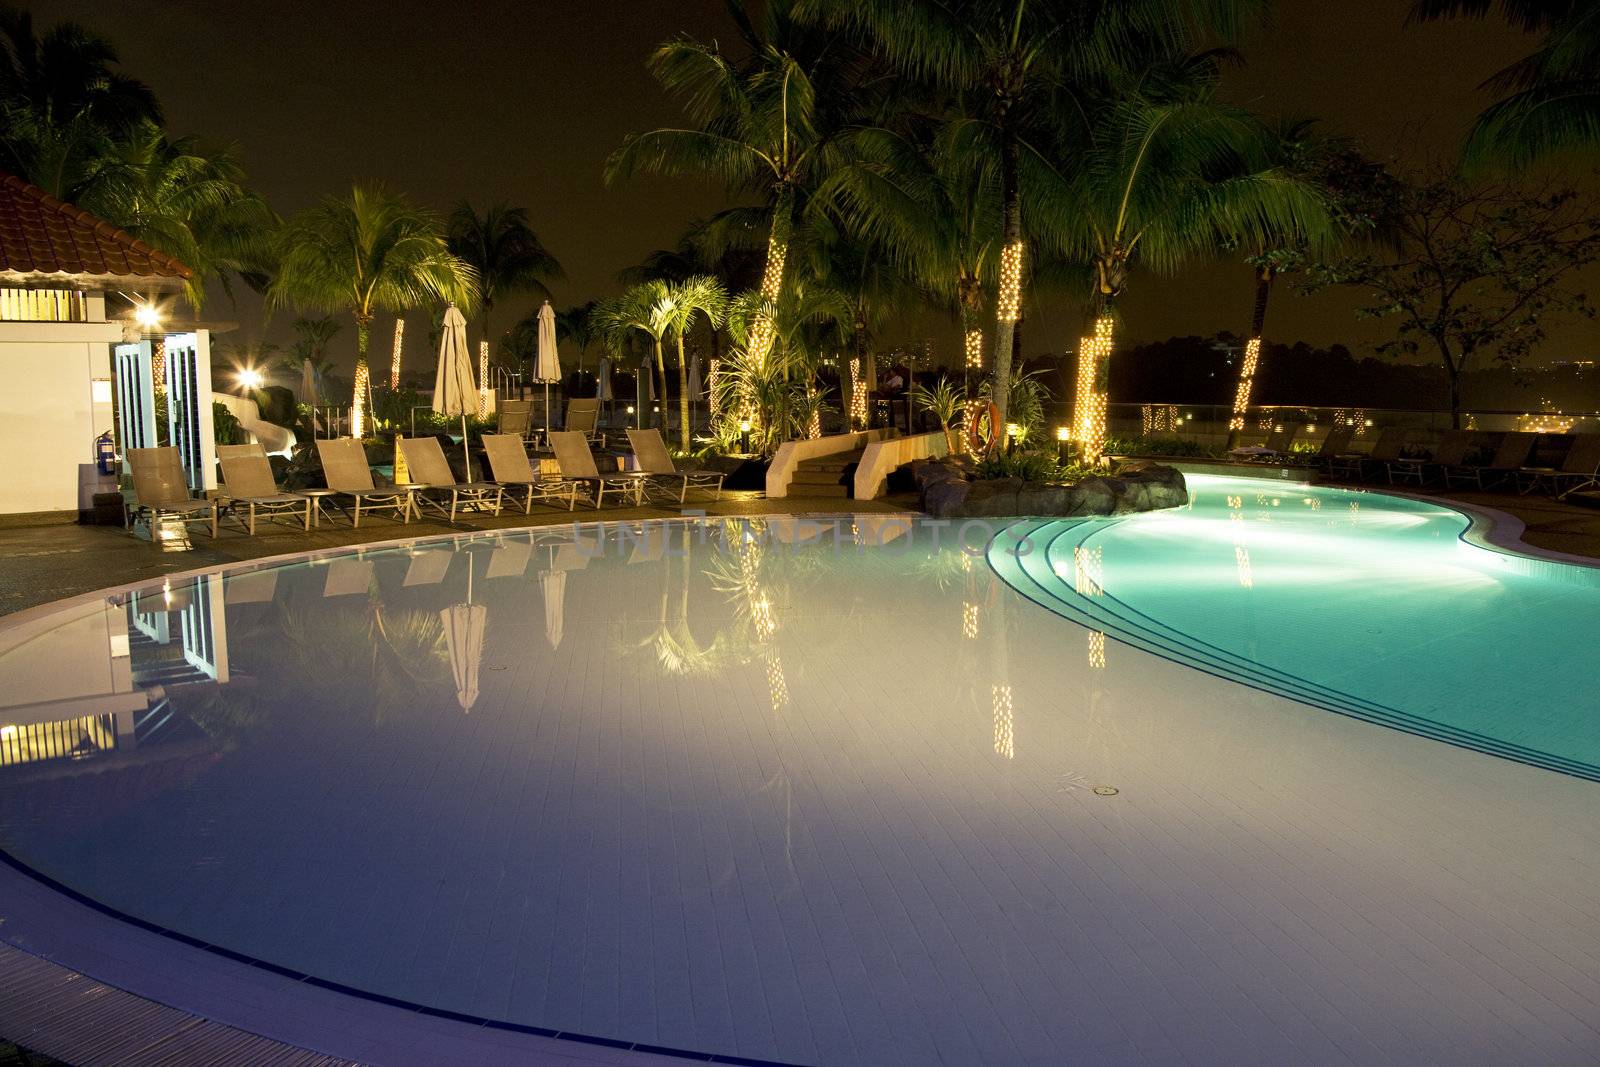 Night image of a swimming pool in Malaysia.